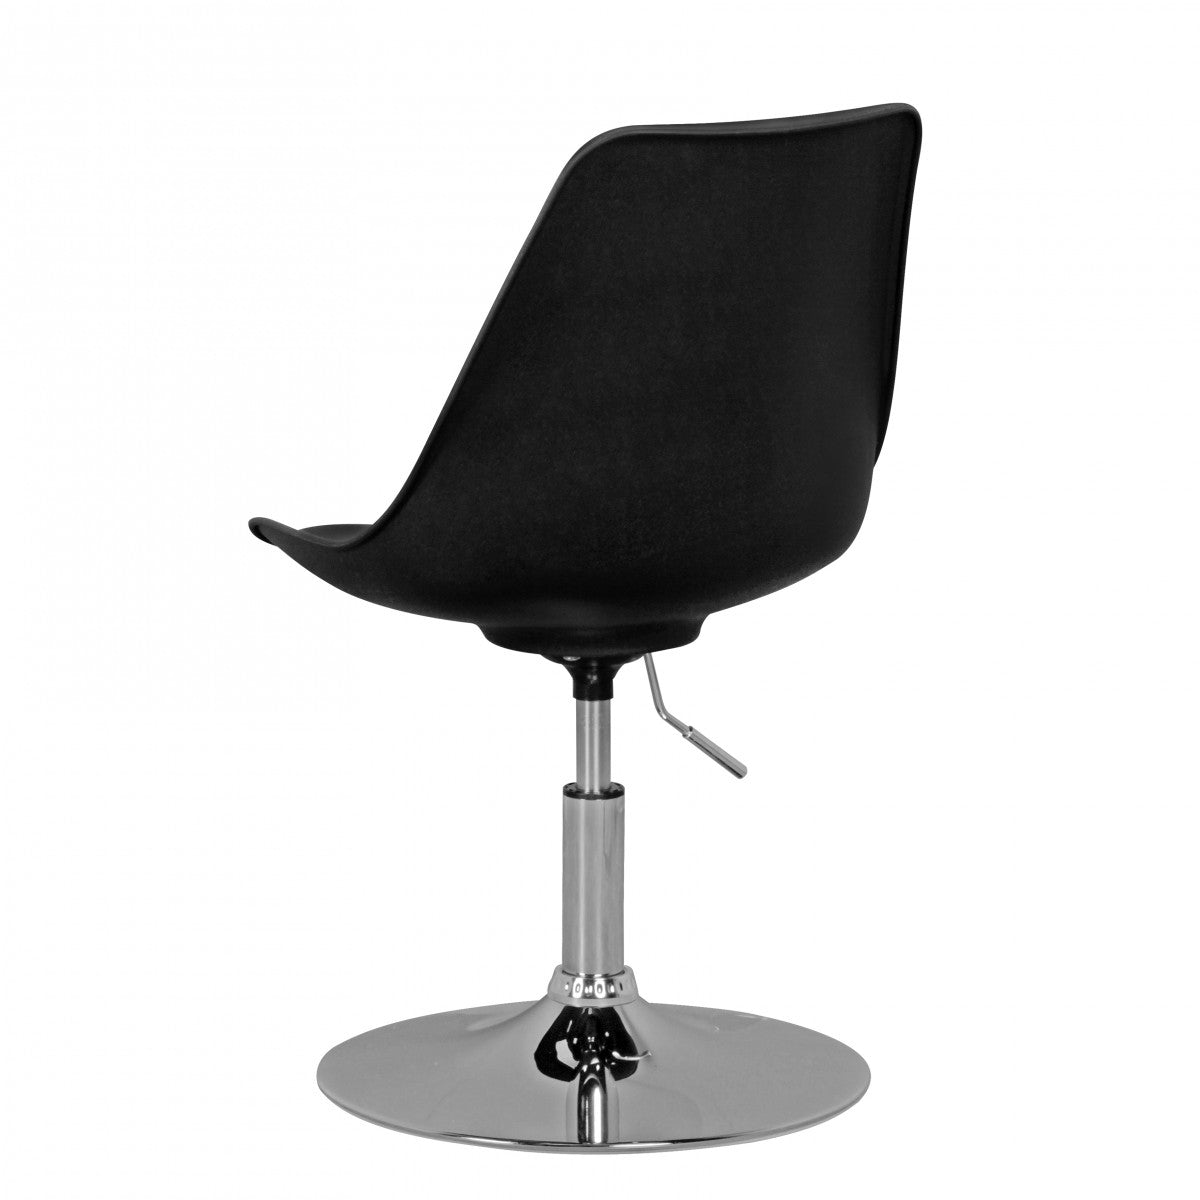 Fauteuil Pontiac de Nancy - Fauteuil pivotant - Chaise de salle d'attente - Chaise de salle à manger - Chaise visiteur - Chaise pivotante - Chaise baquet - Noir/Blanc/Gris